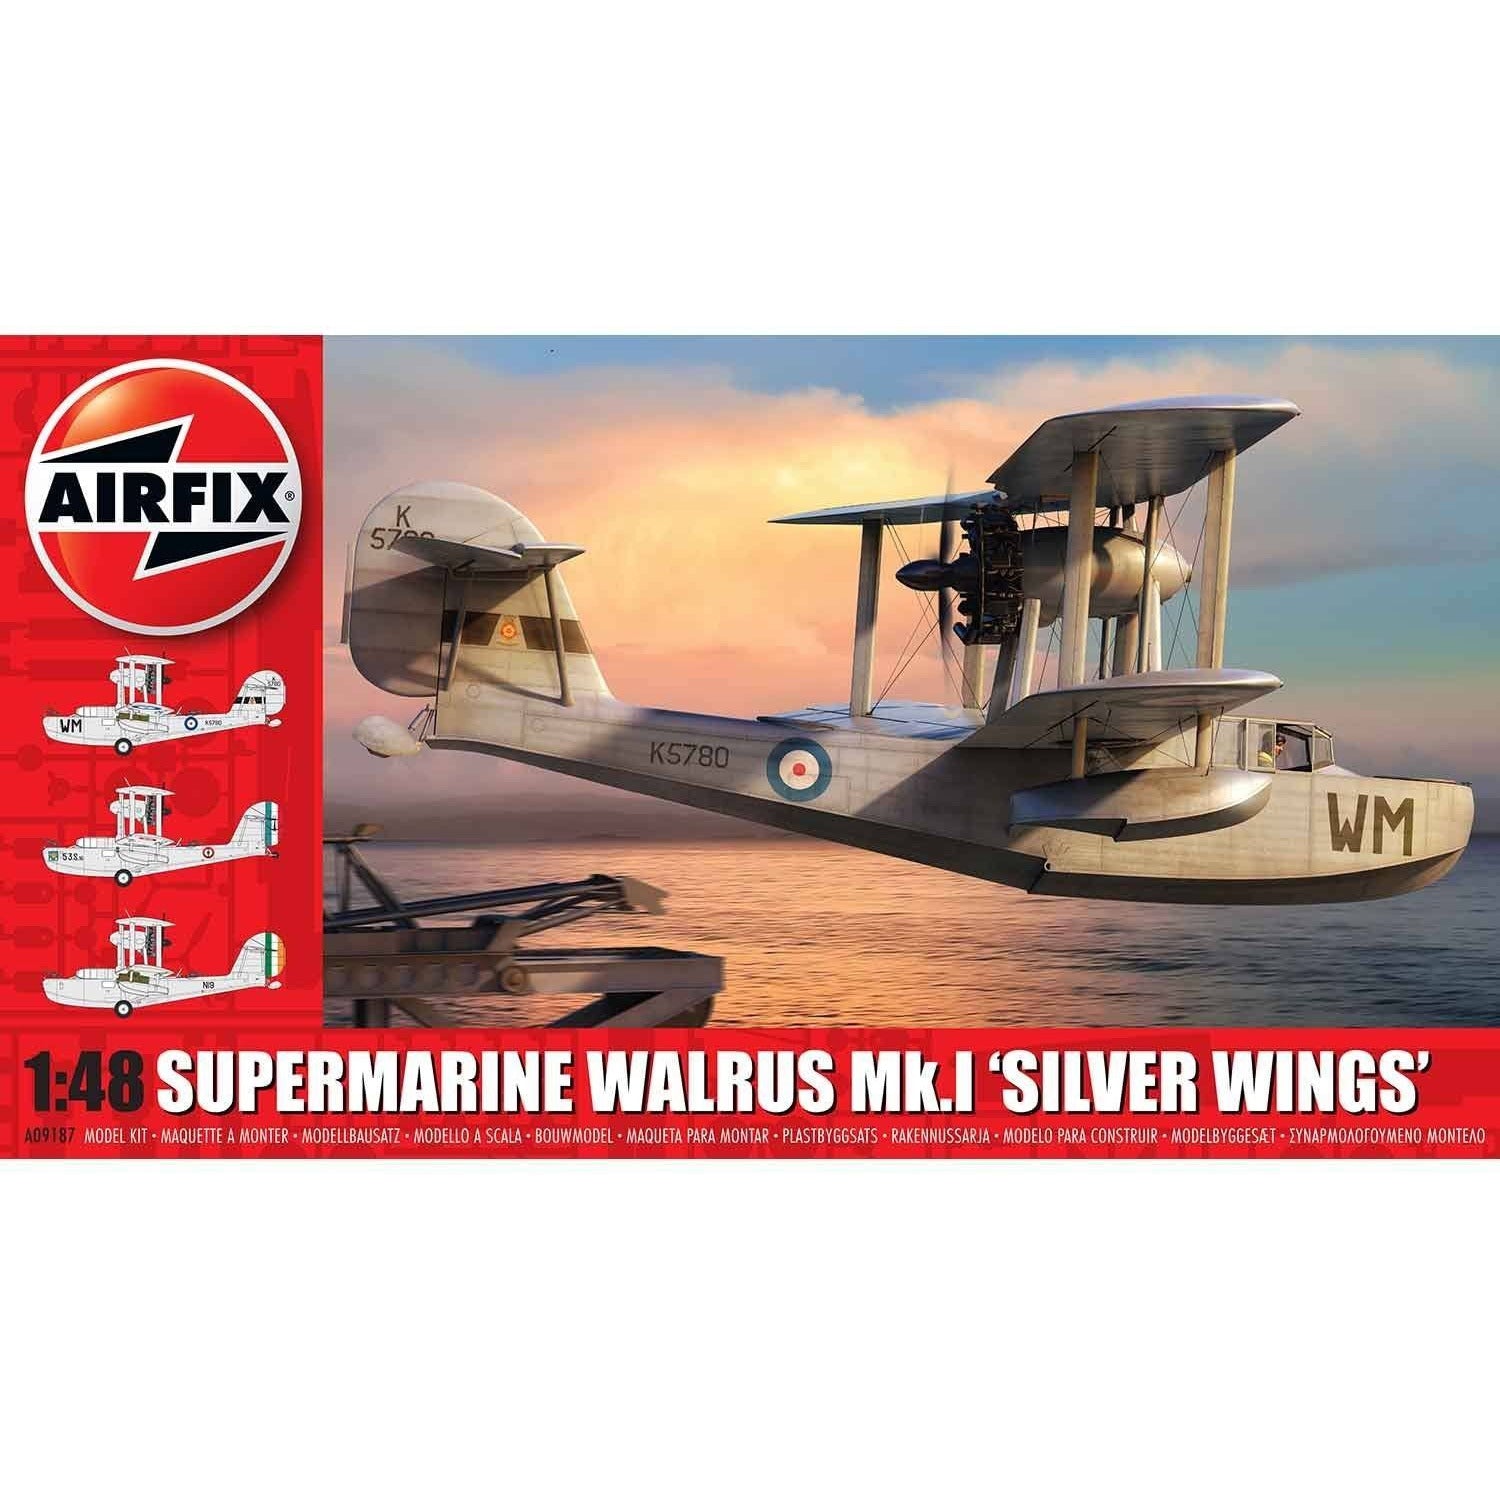 Supermarine Walrus MK. 1 1/48 by Airfix